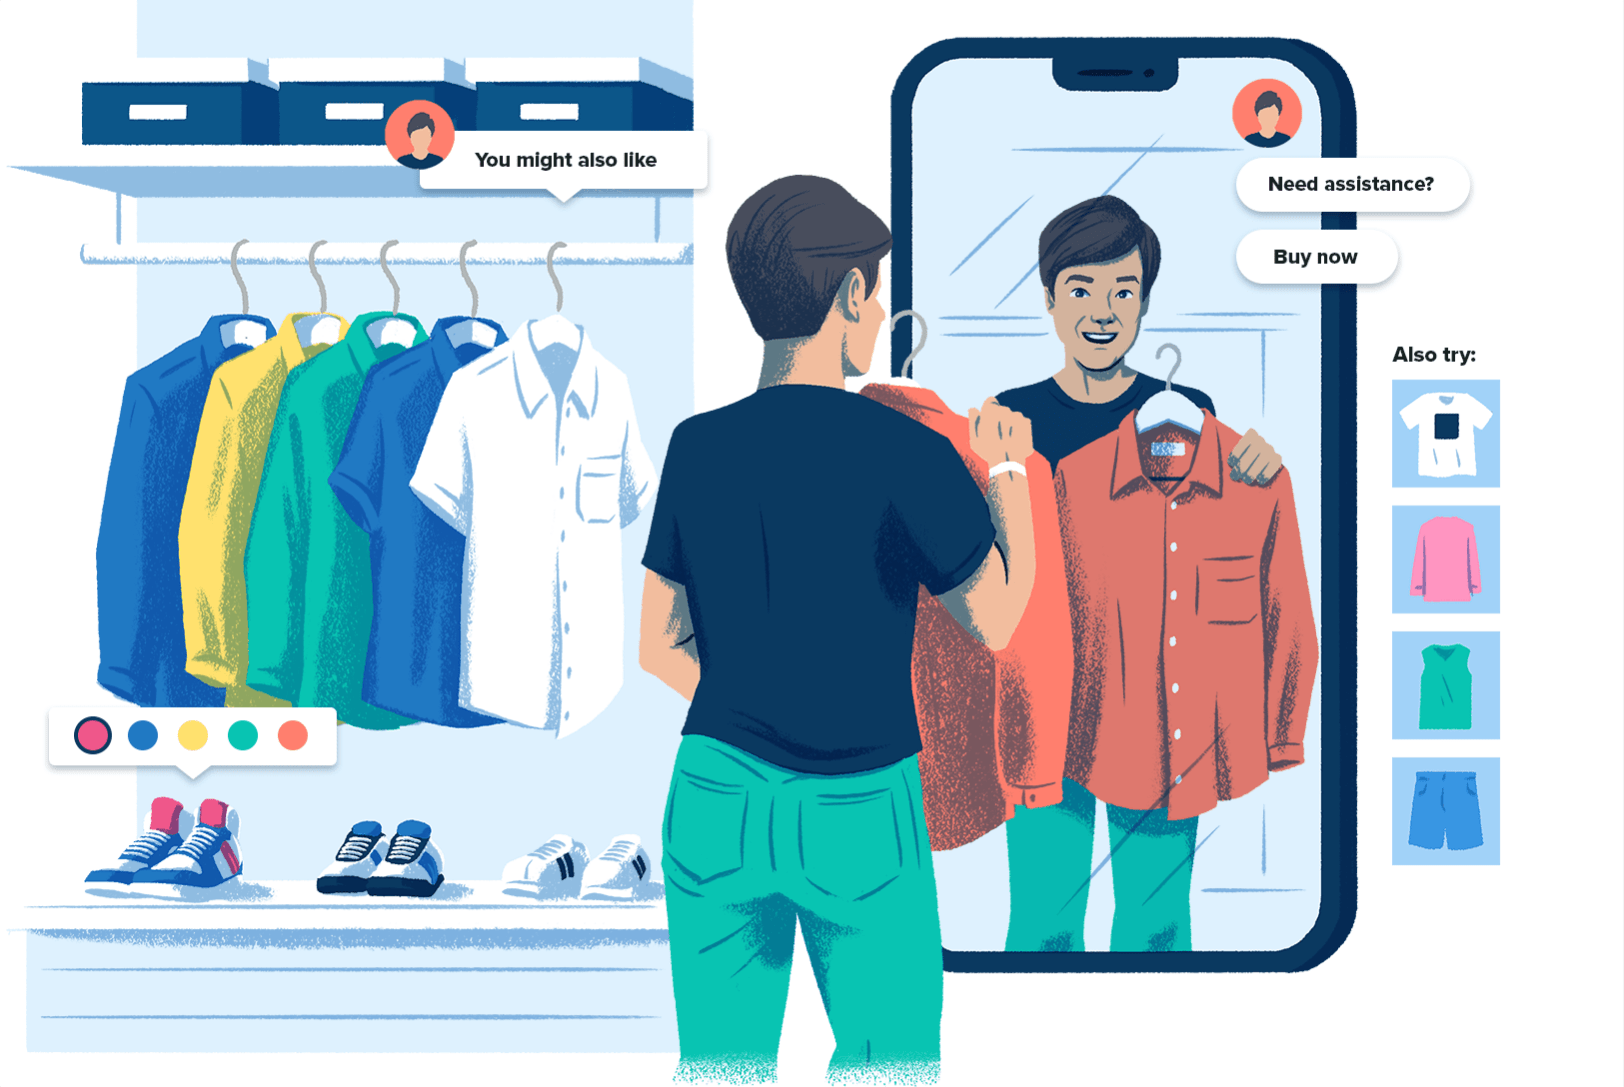 Desenho de um consumidor em uma loja com um espelho em forma de celular e botões de compra online, representando a experiência de loja que as compras em redes sociais podem oferecer.